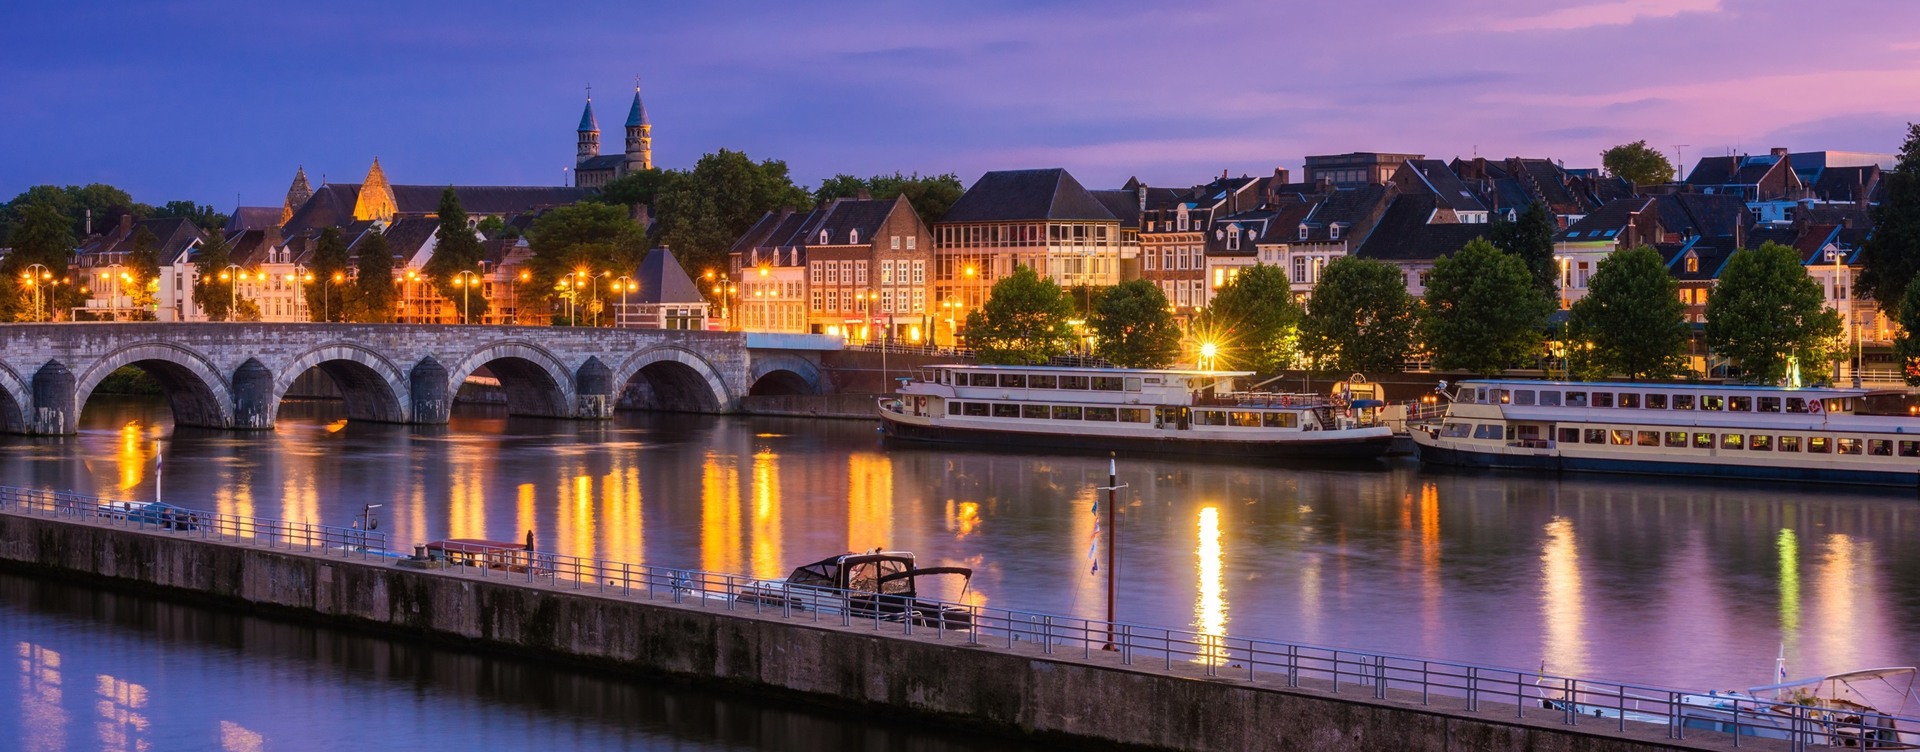 Beleef het bruisende Maastricht
tijdens een onvergetelijk verblijf